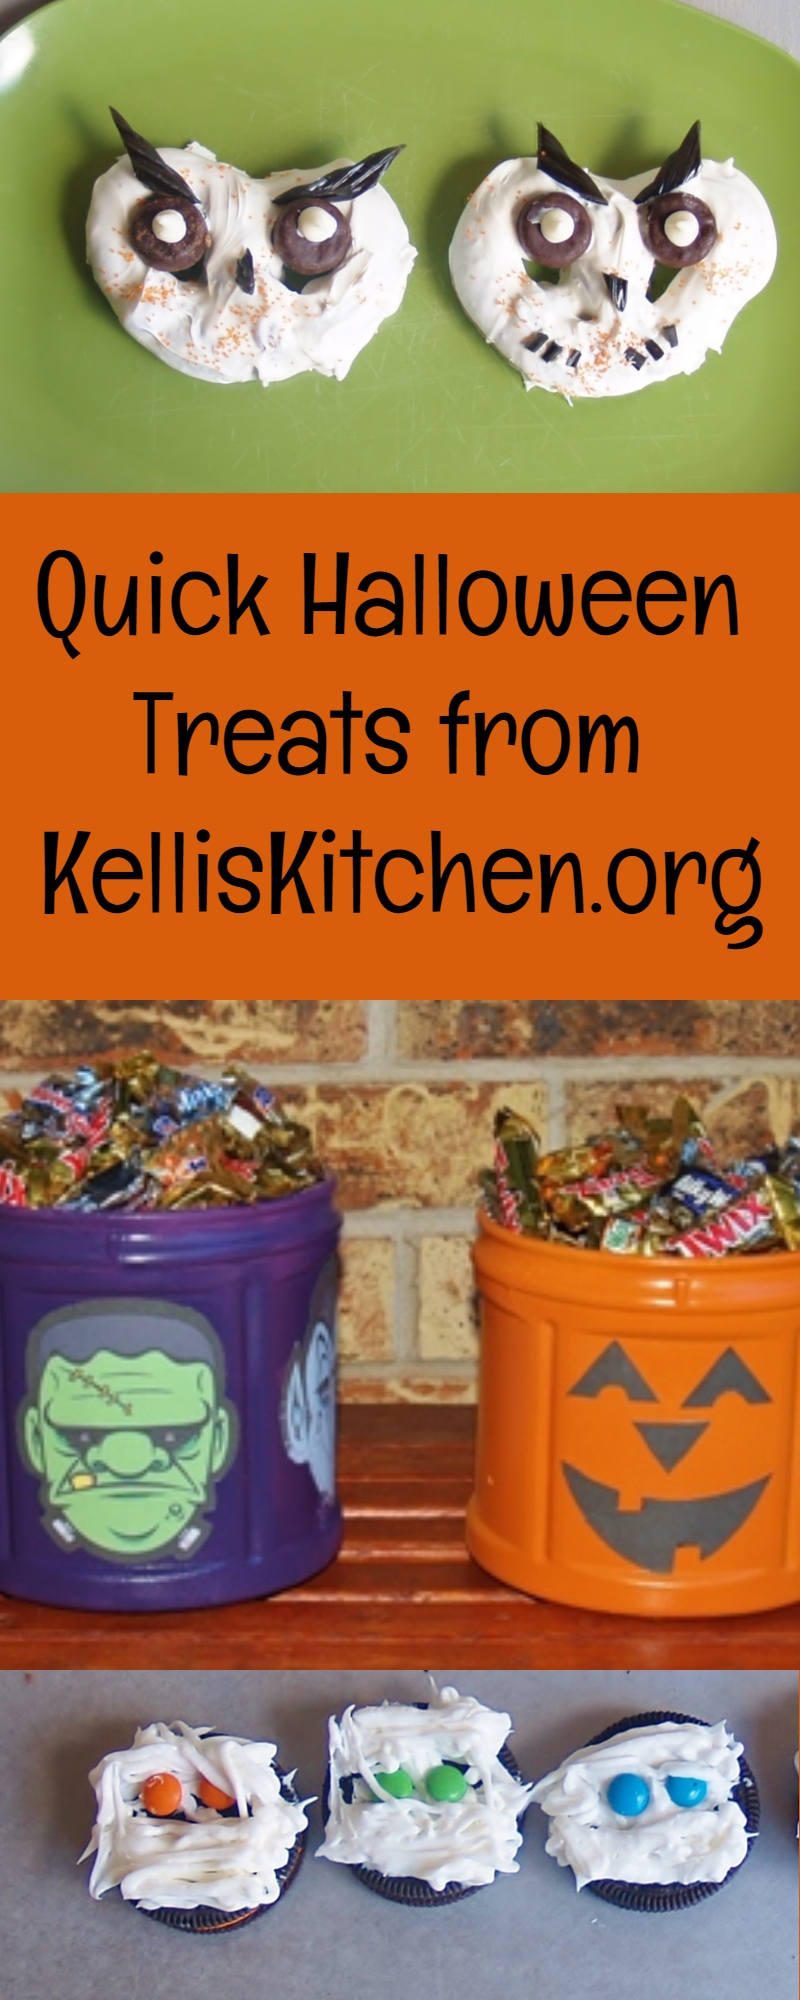 Quick Halloween Treats from KellisKitchen.org via @KitchenKelli